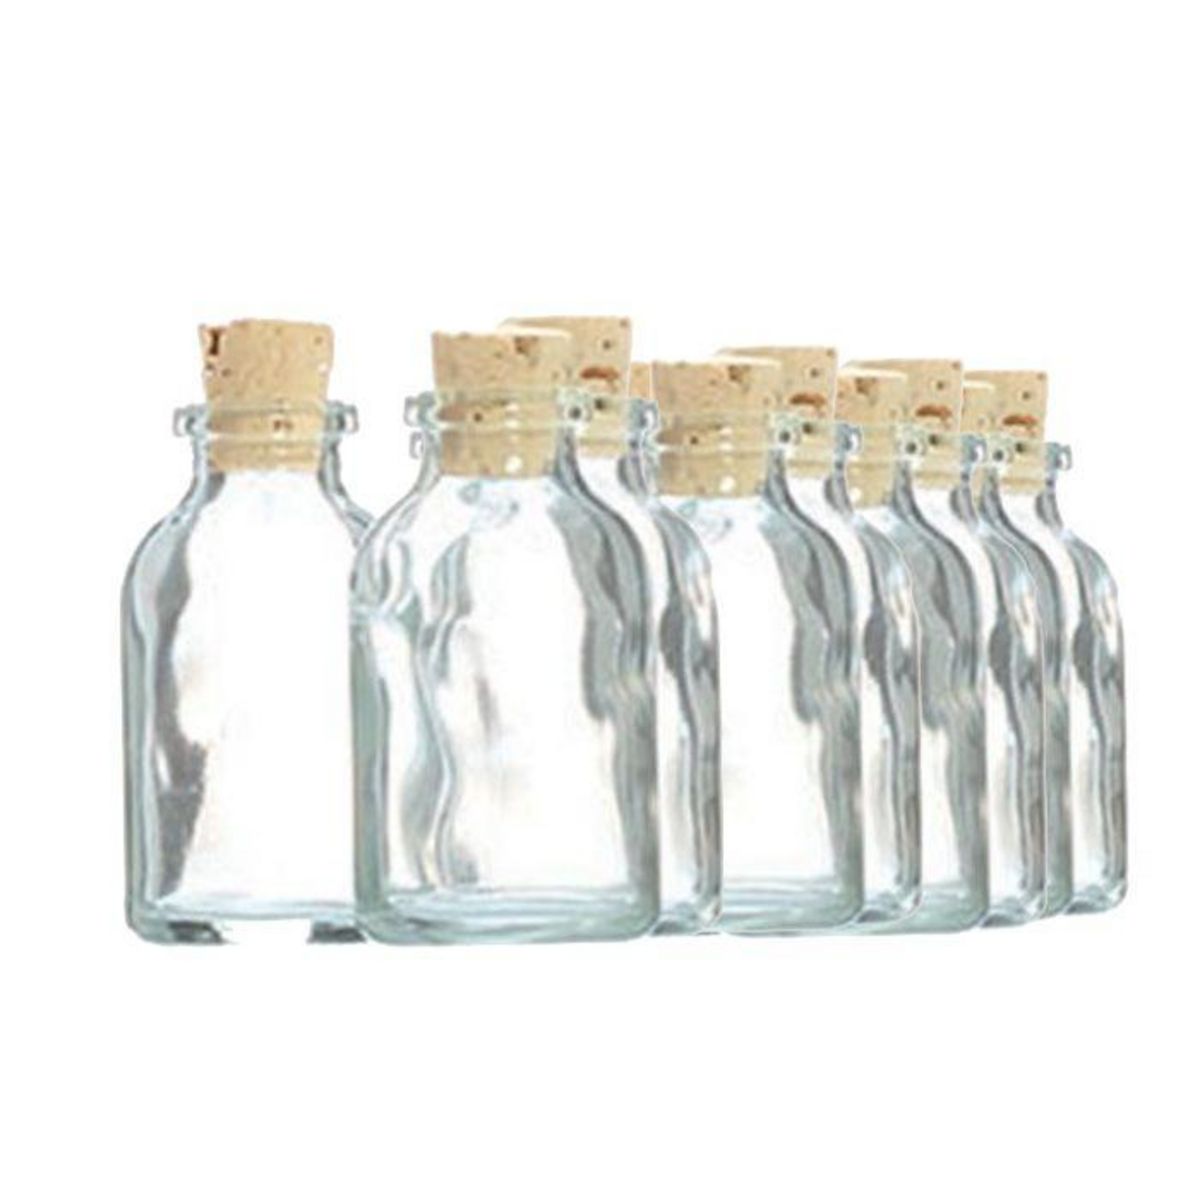 Graine créative 20 mini bouteilles en verre 6 cm avec bouchon liège